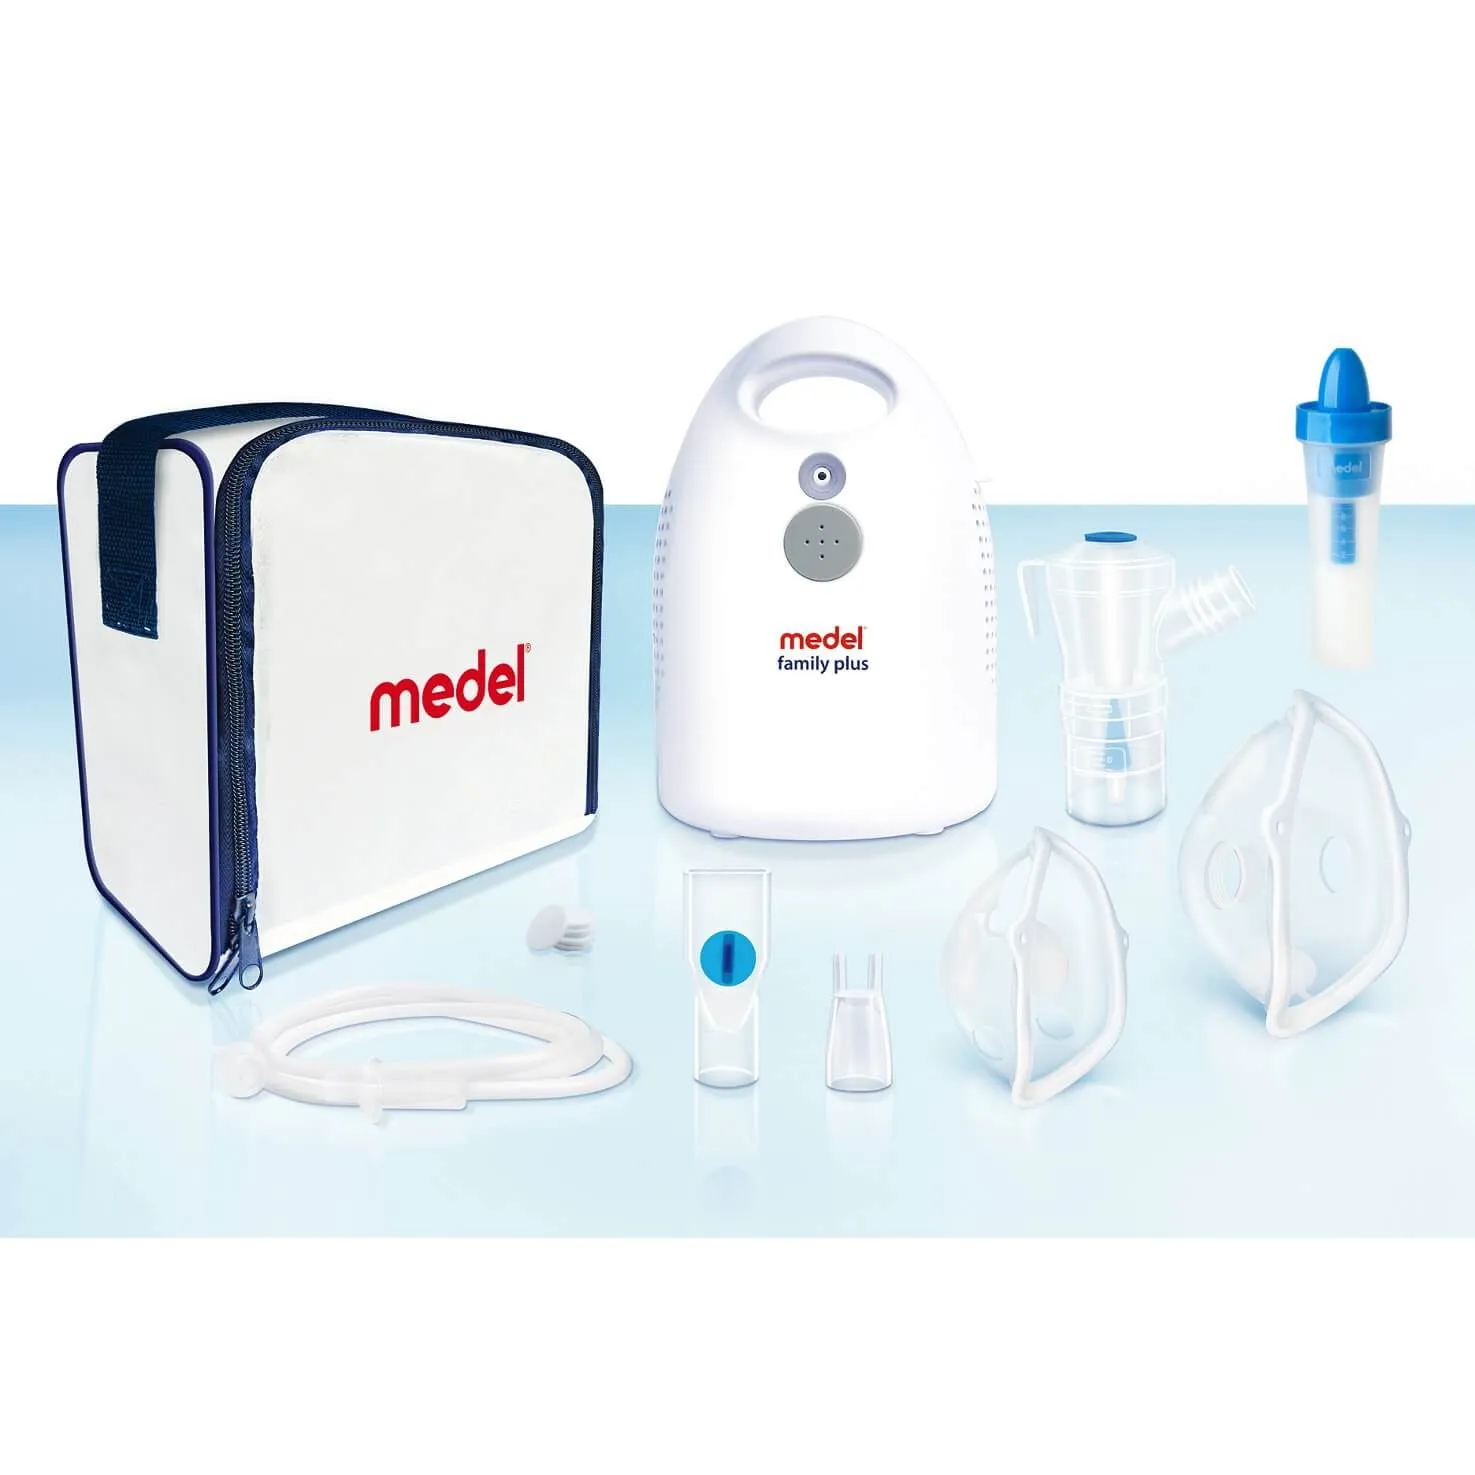 Medel Family Plus, inhalator kompresorowy z dodatkowym nebulizatorem Jet Rhino 